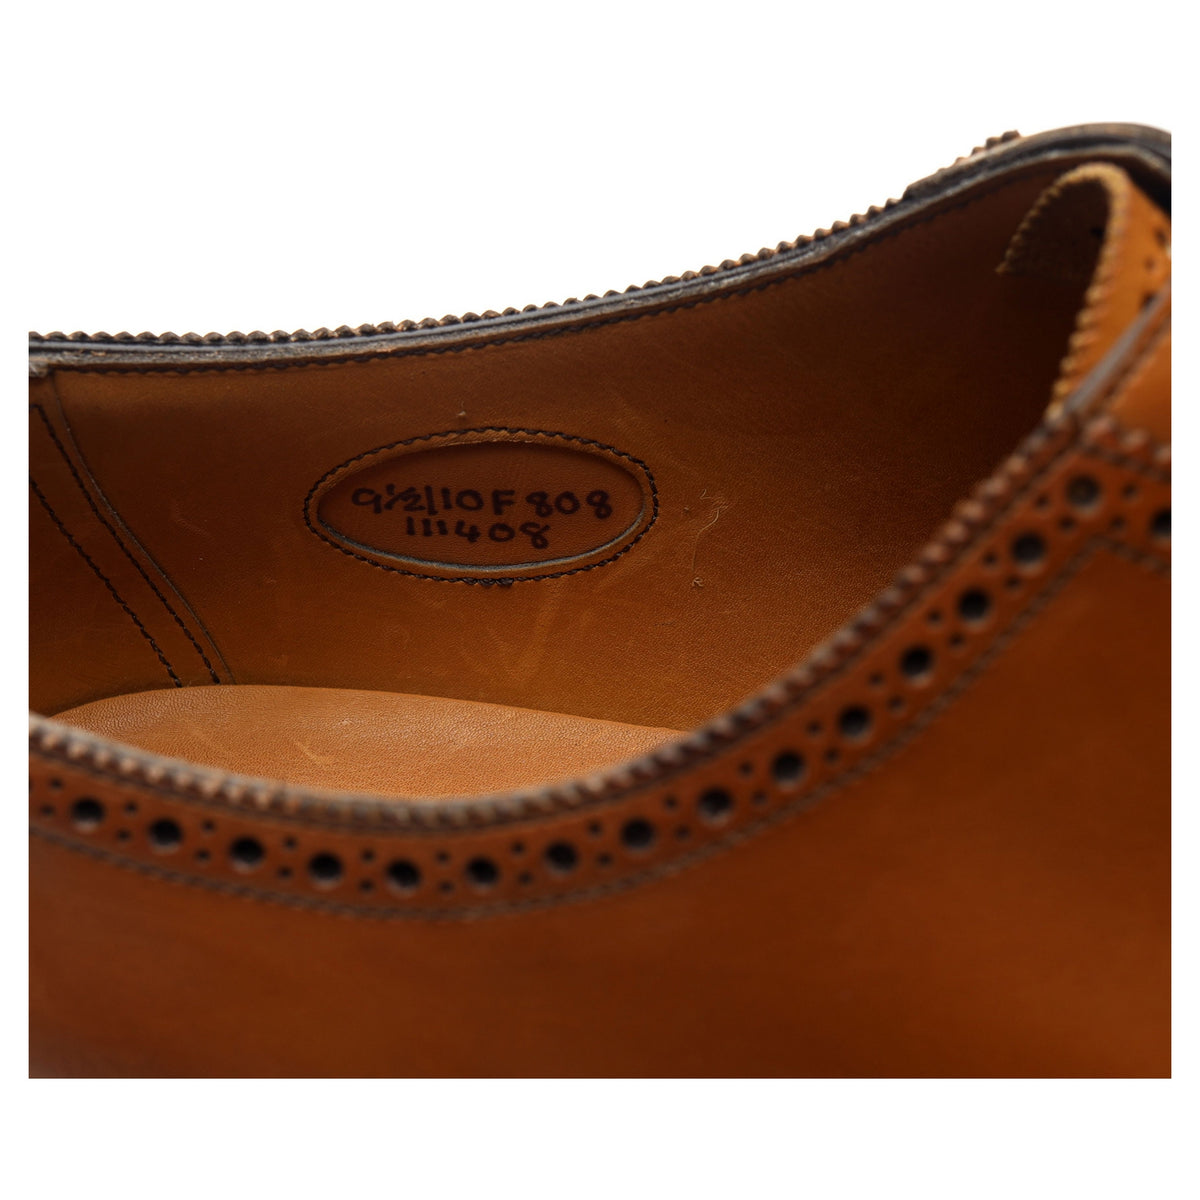 &#39;Walcot&#39; Tan Brown Leather Oxford UK 9.5 F